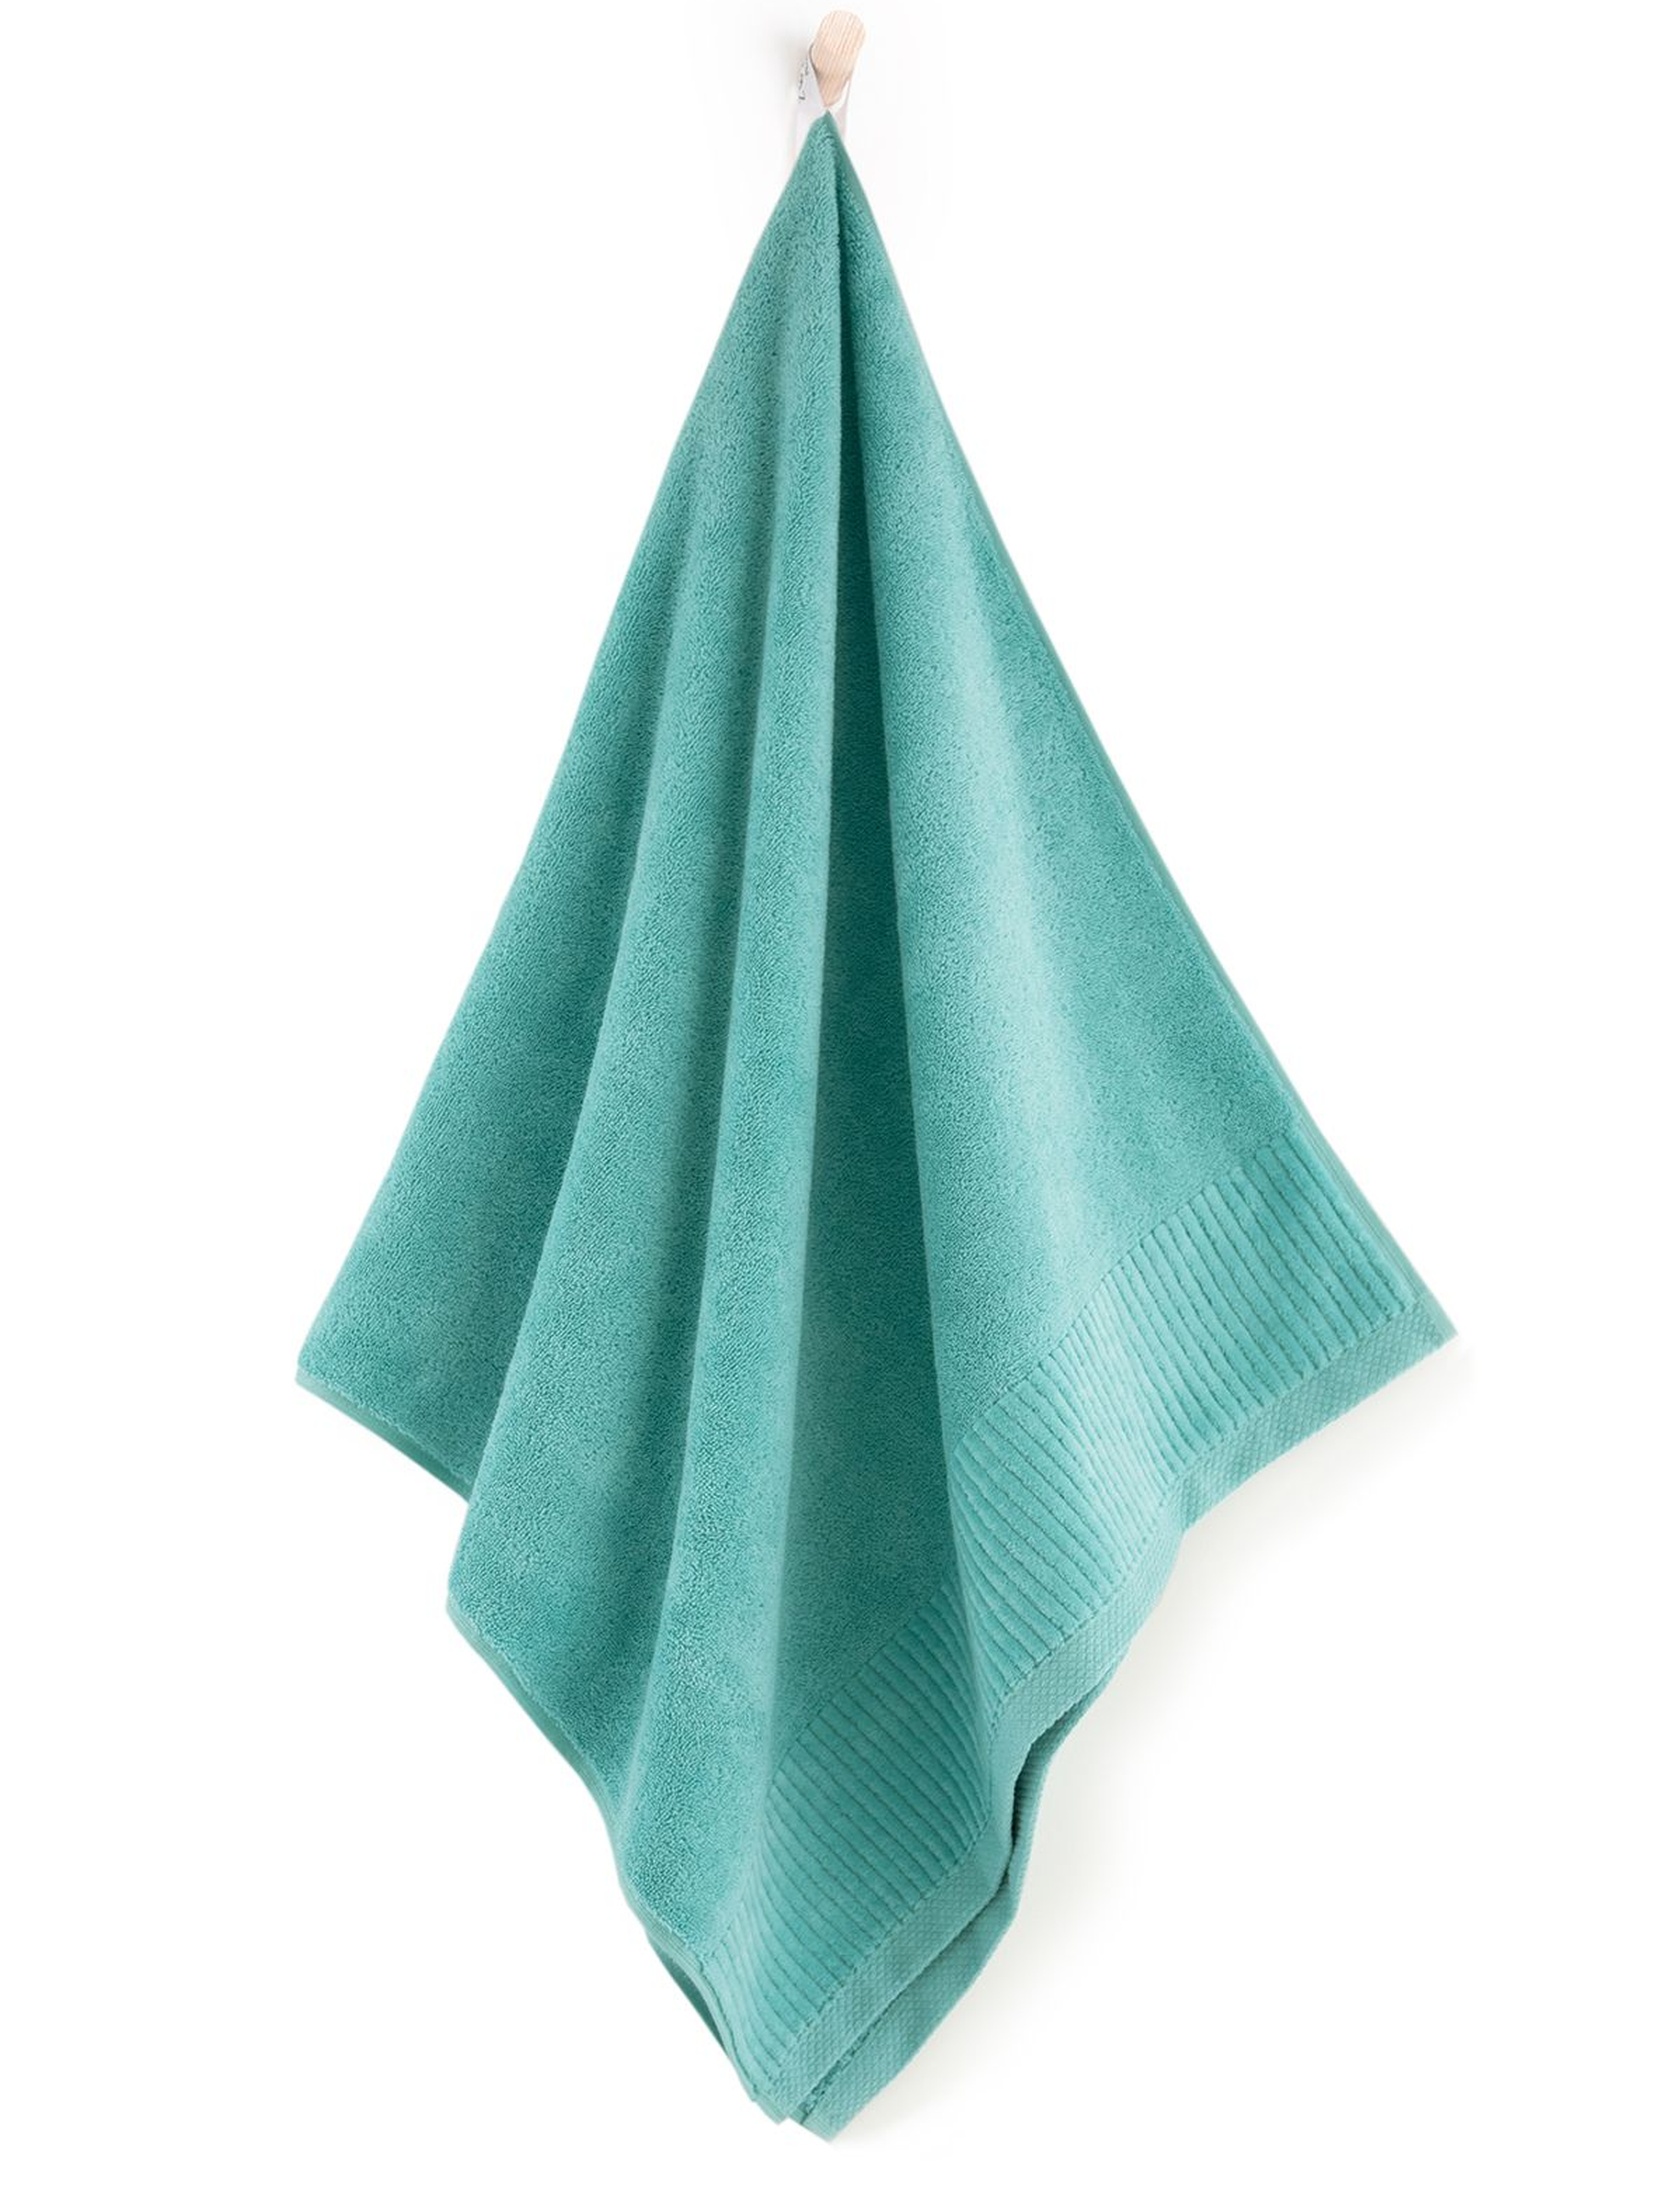 Ręcznik z bawełny egipskiej Lisbona 50x90cm